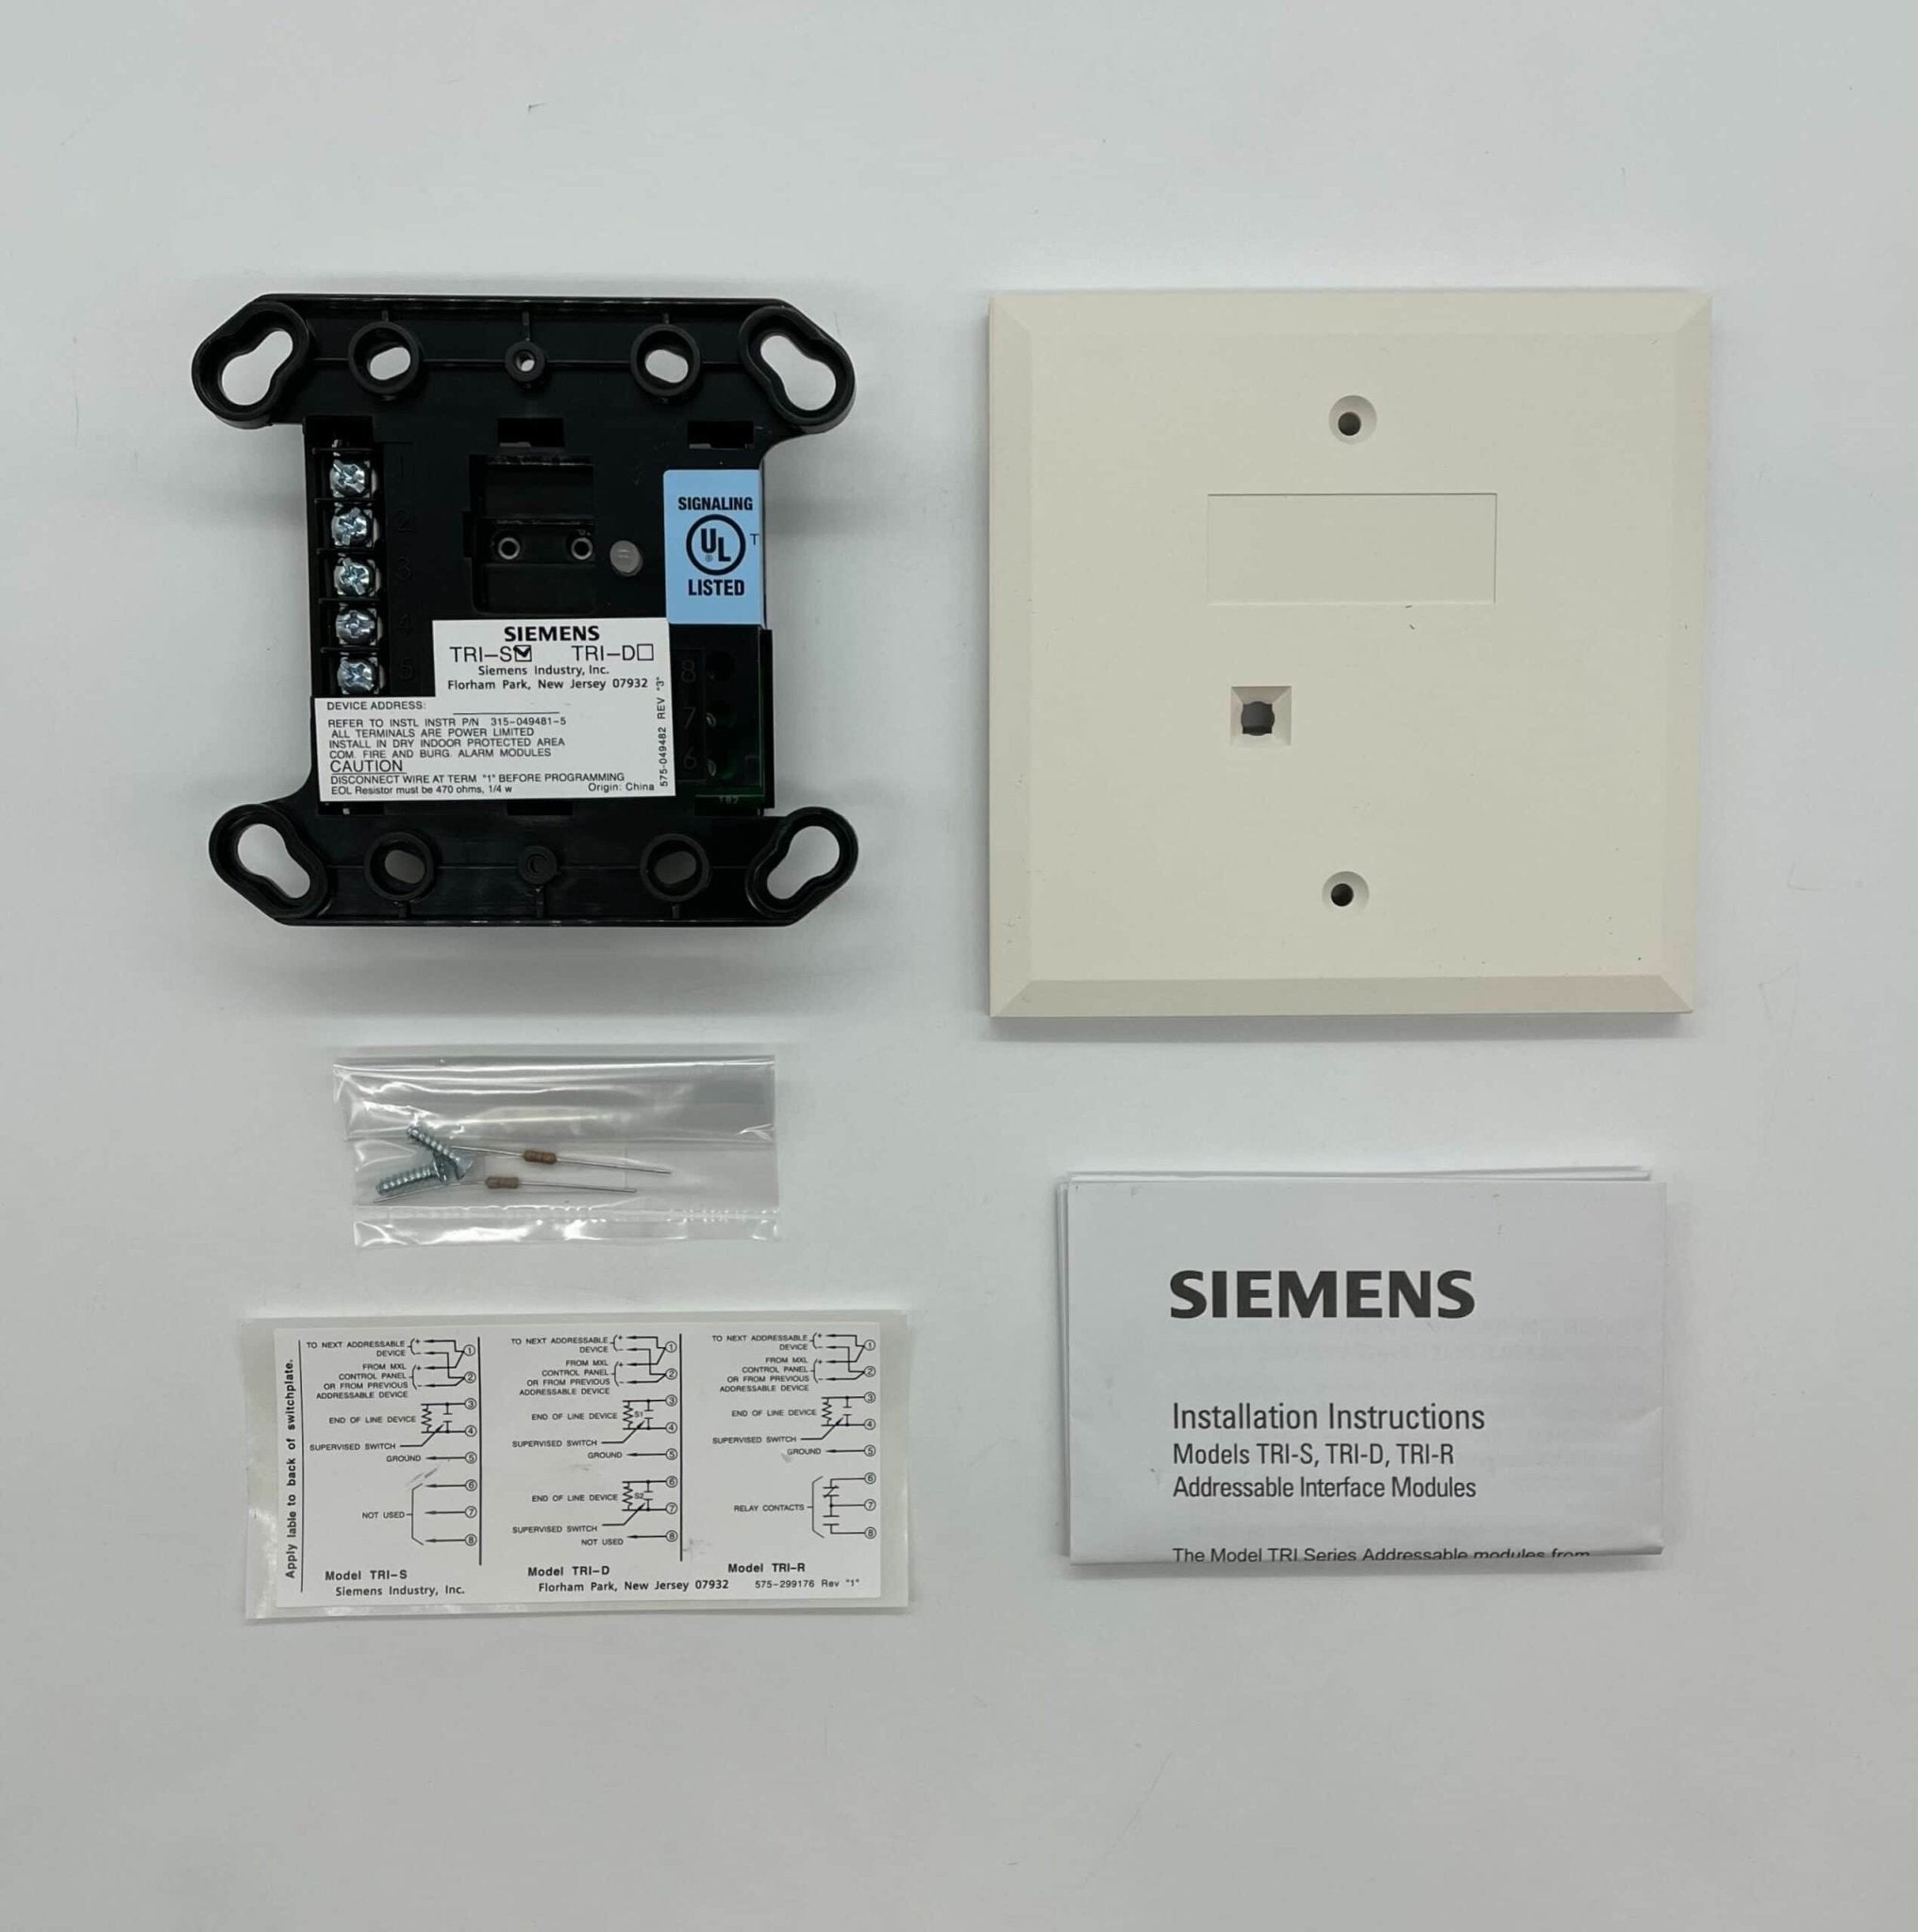 Siemens TRI-S Intelligent Interface Module - The Fire Alarm Supplier